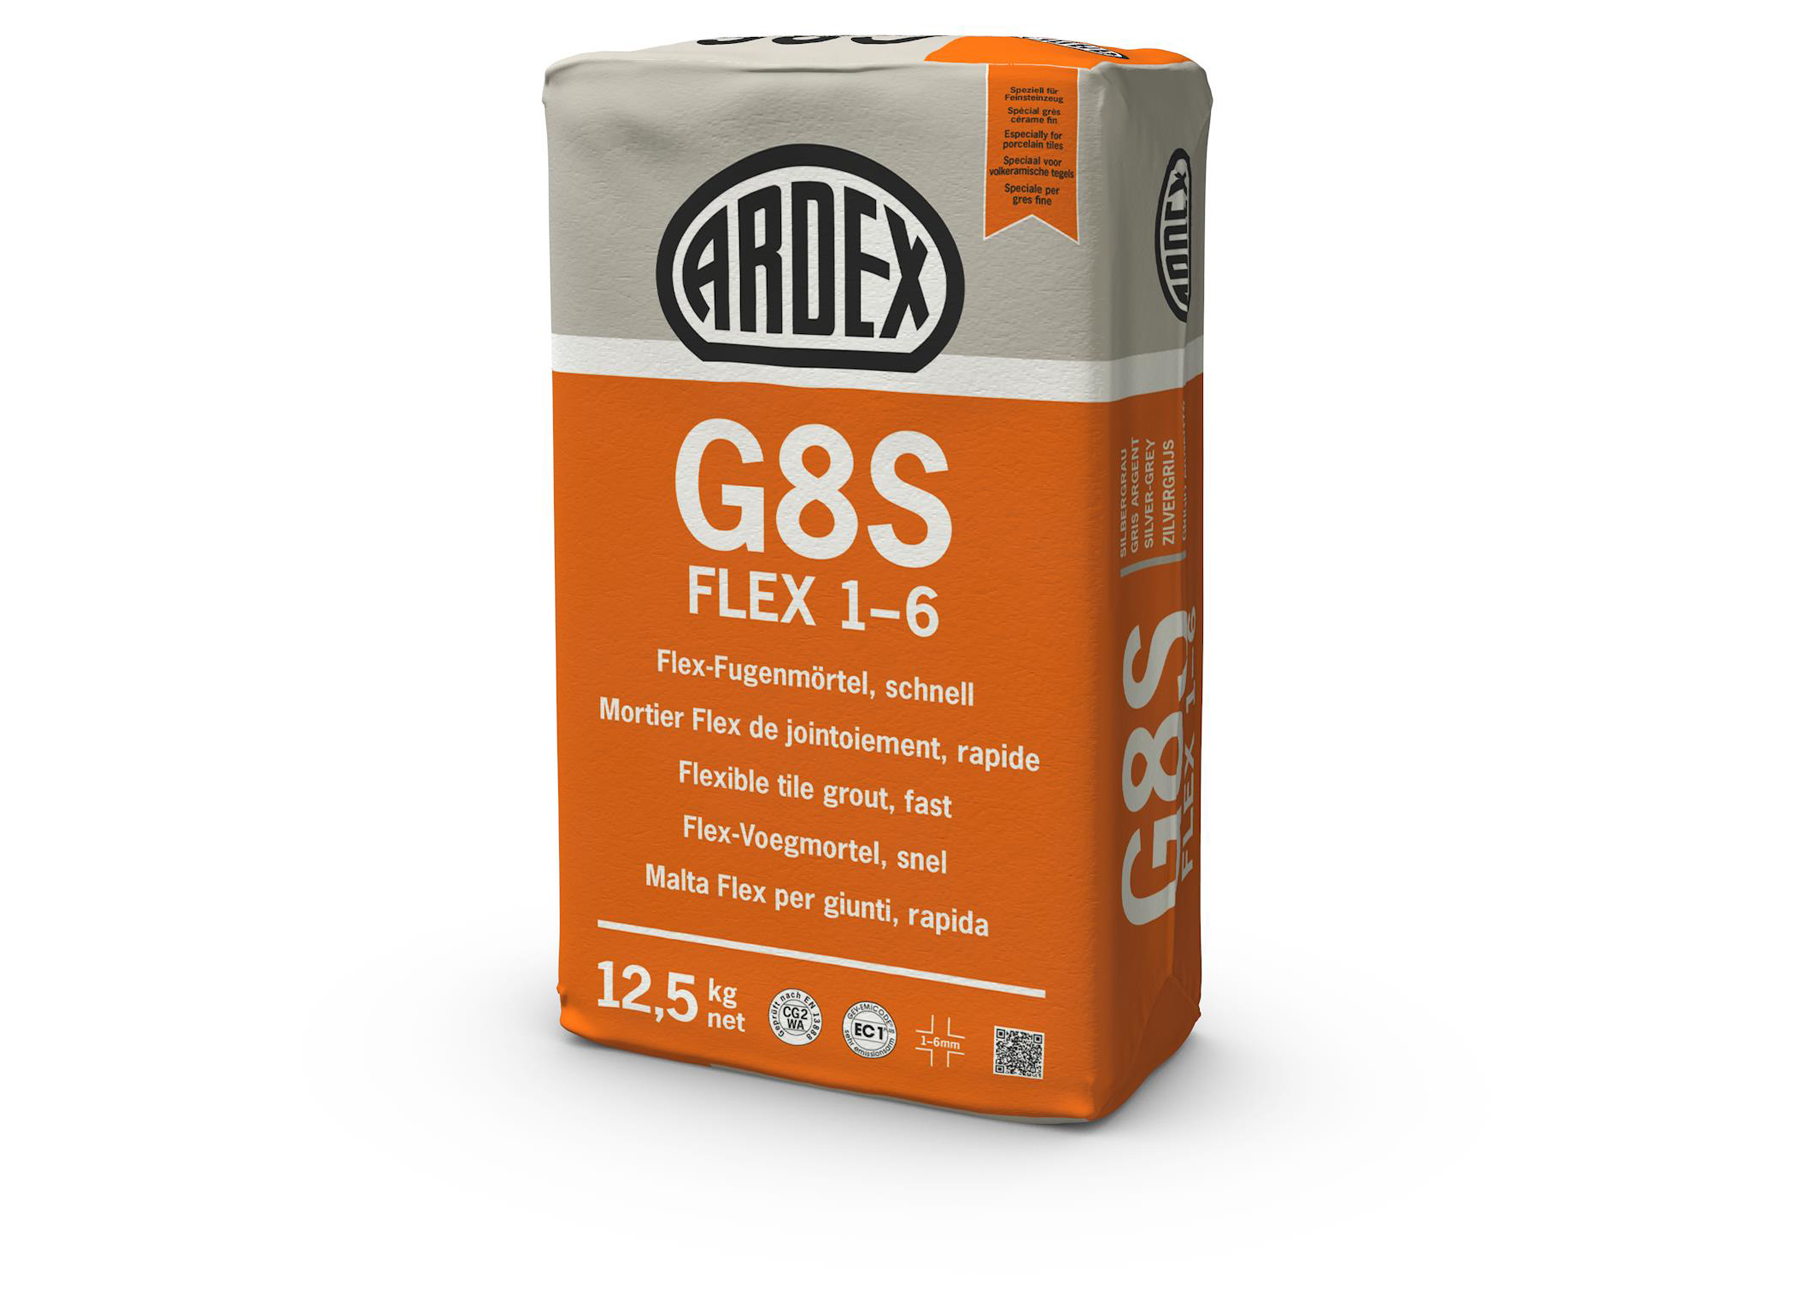 G8S FLEX 1-6 GRIJS 12.5KG